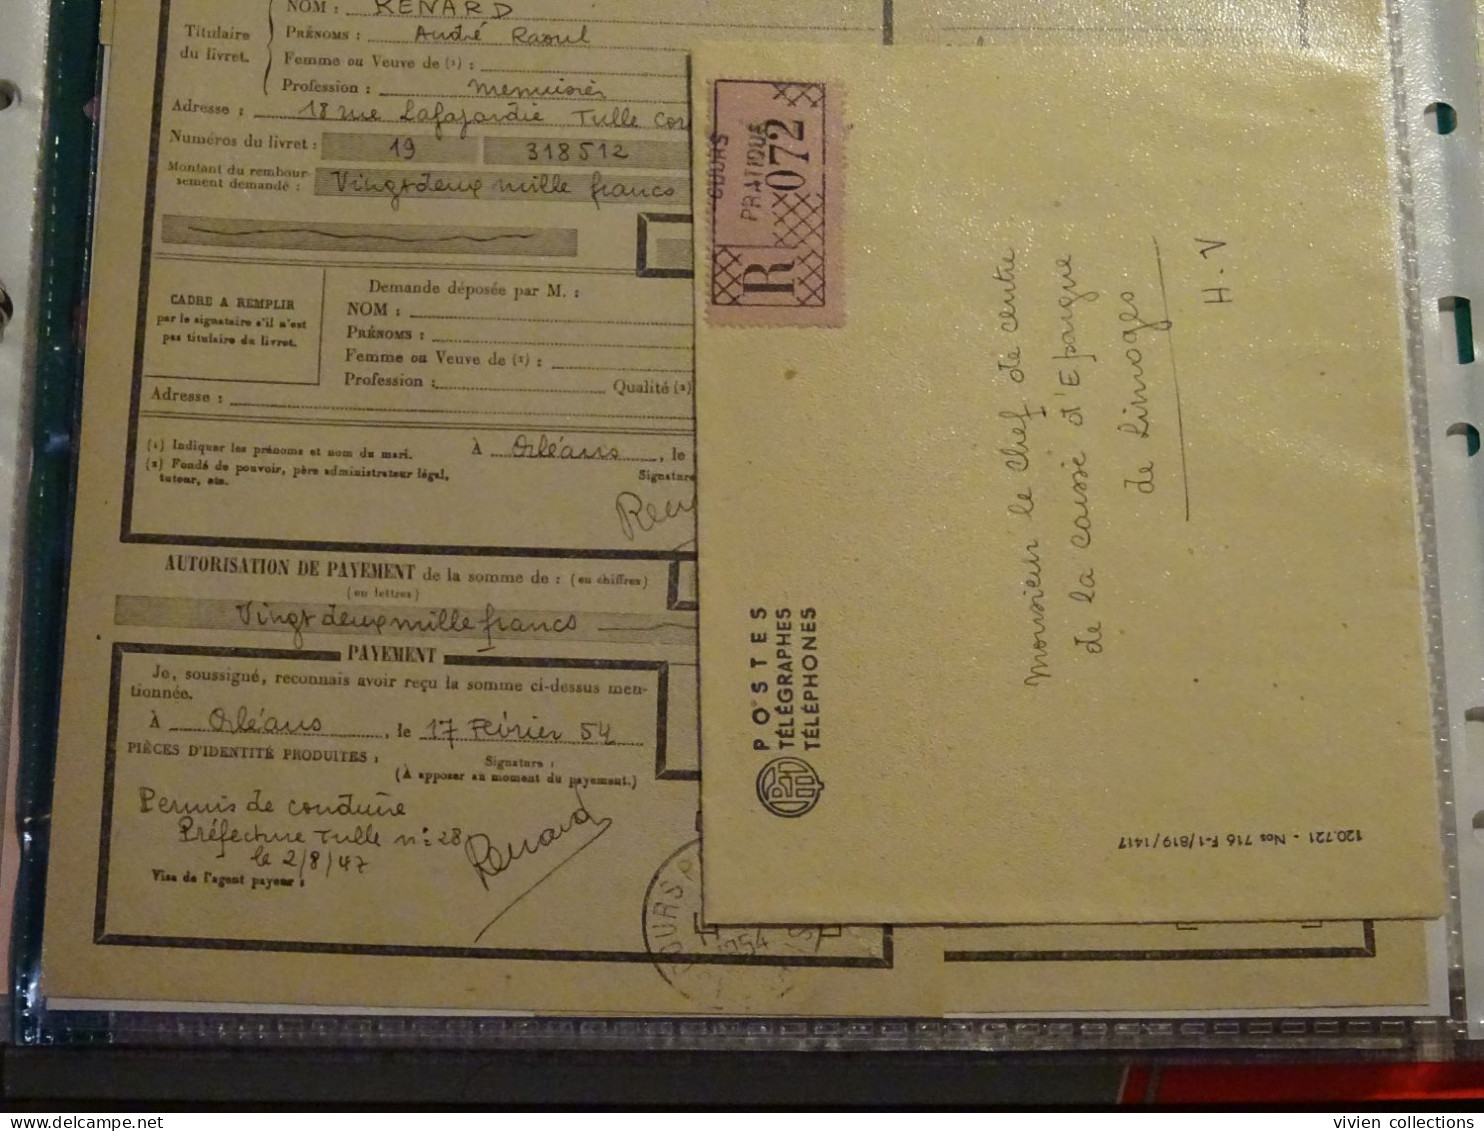 France Cours Pratique D'instruction Orléans 1954 Télégramme Remboursement A Vue Partiel CNE M. Renard Menuisier à Tulle - Cours D'Instruction